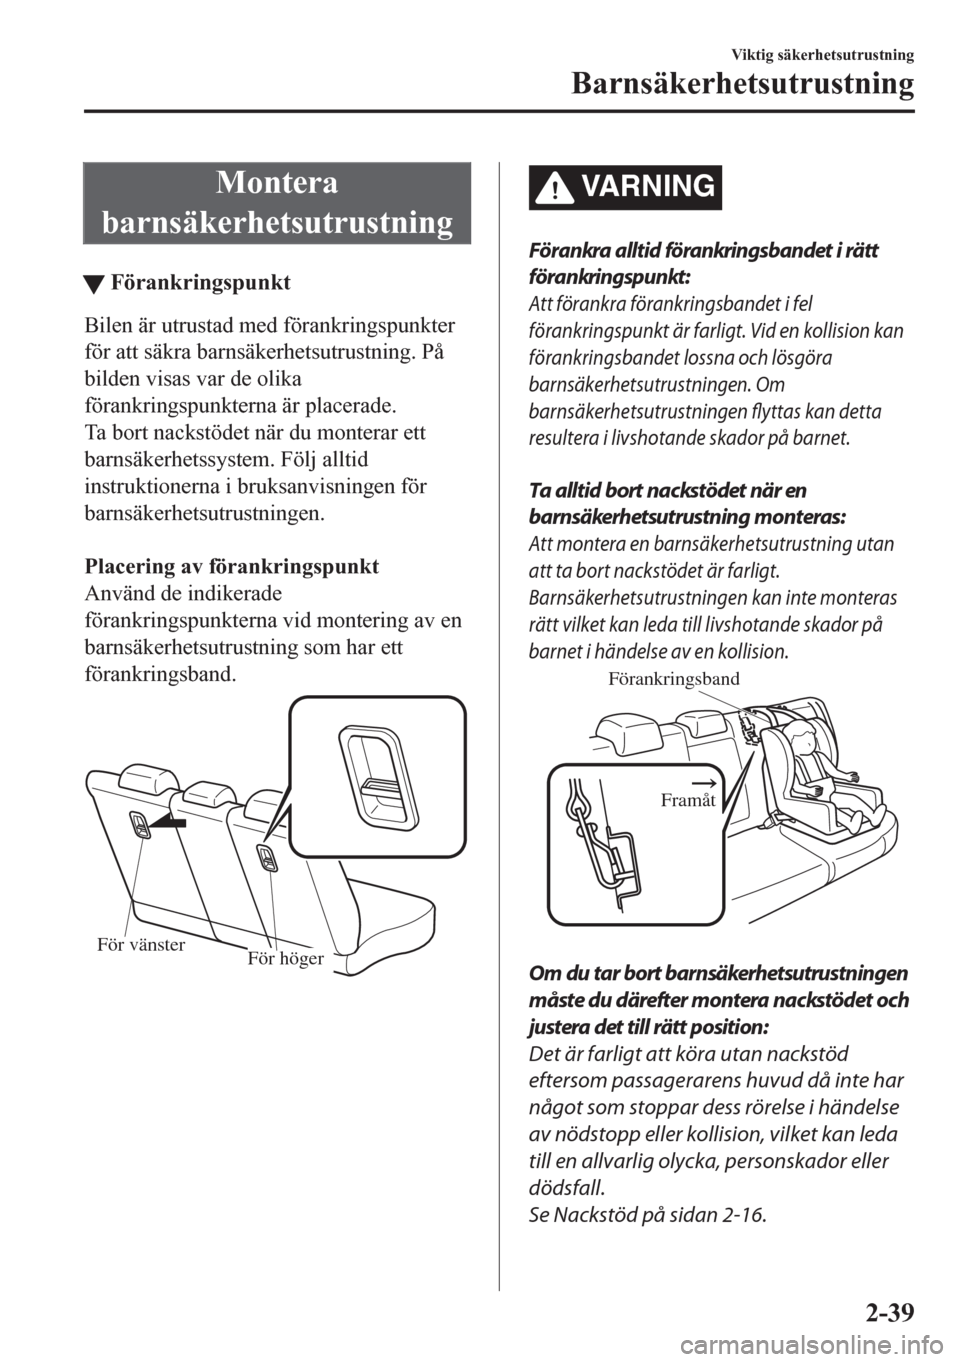 MAZDA MODEL CX-5 2018  Ägarmanual (in Swedish) Montera
barnsäkerhetsutrustning
tFörankringspunkt
Bilen är utrustad med förankringspunkter
för att säkra barnsäkerhetsutrustning. På
bilden visas var de olika
förankringspunkterna är placera